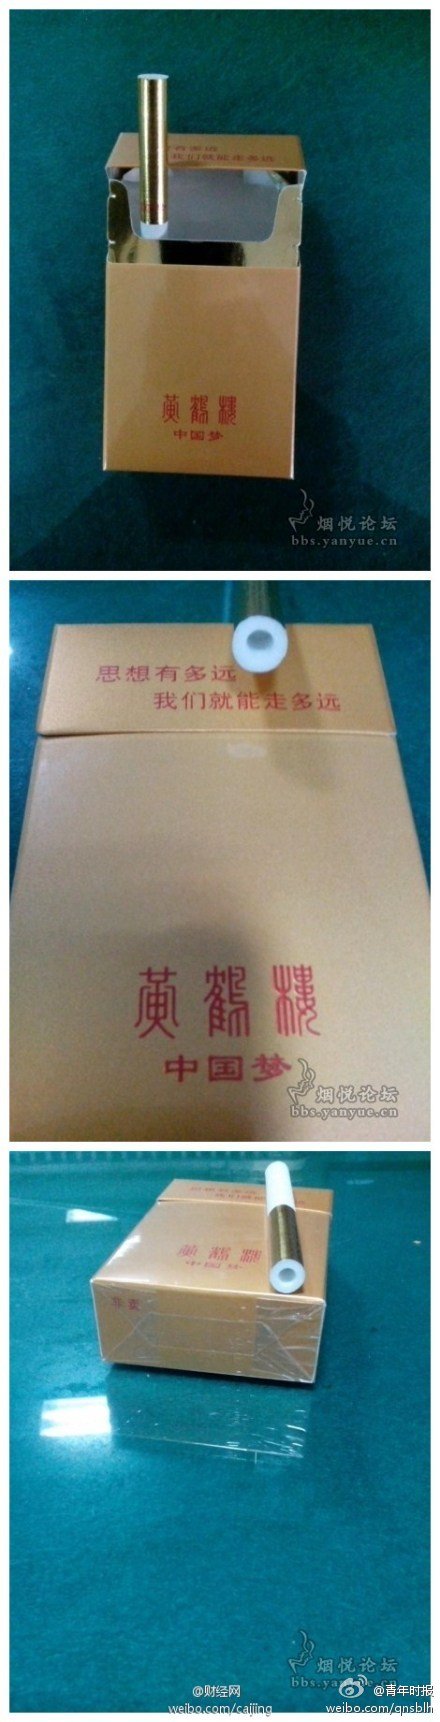 湖北中烟否认标中国梦香烟千元一盒:非正式商品